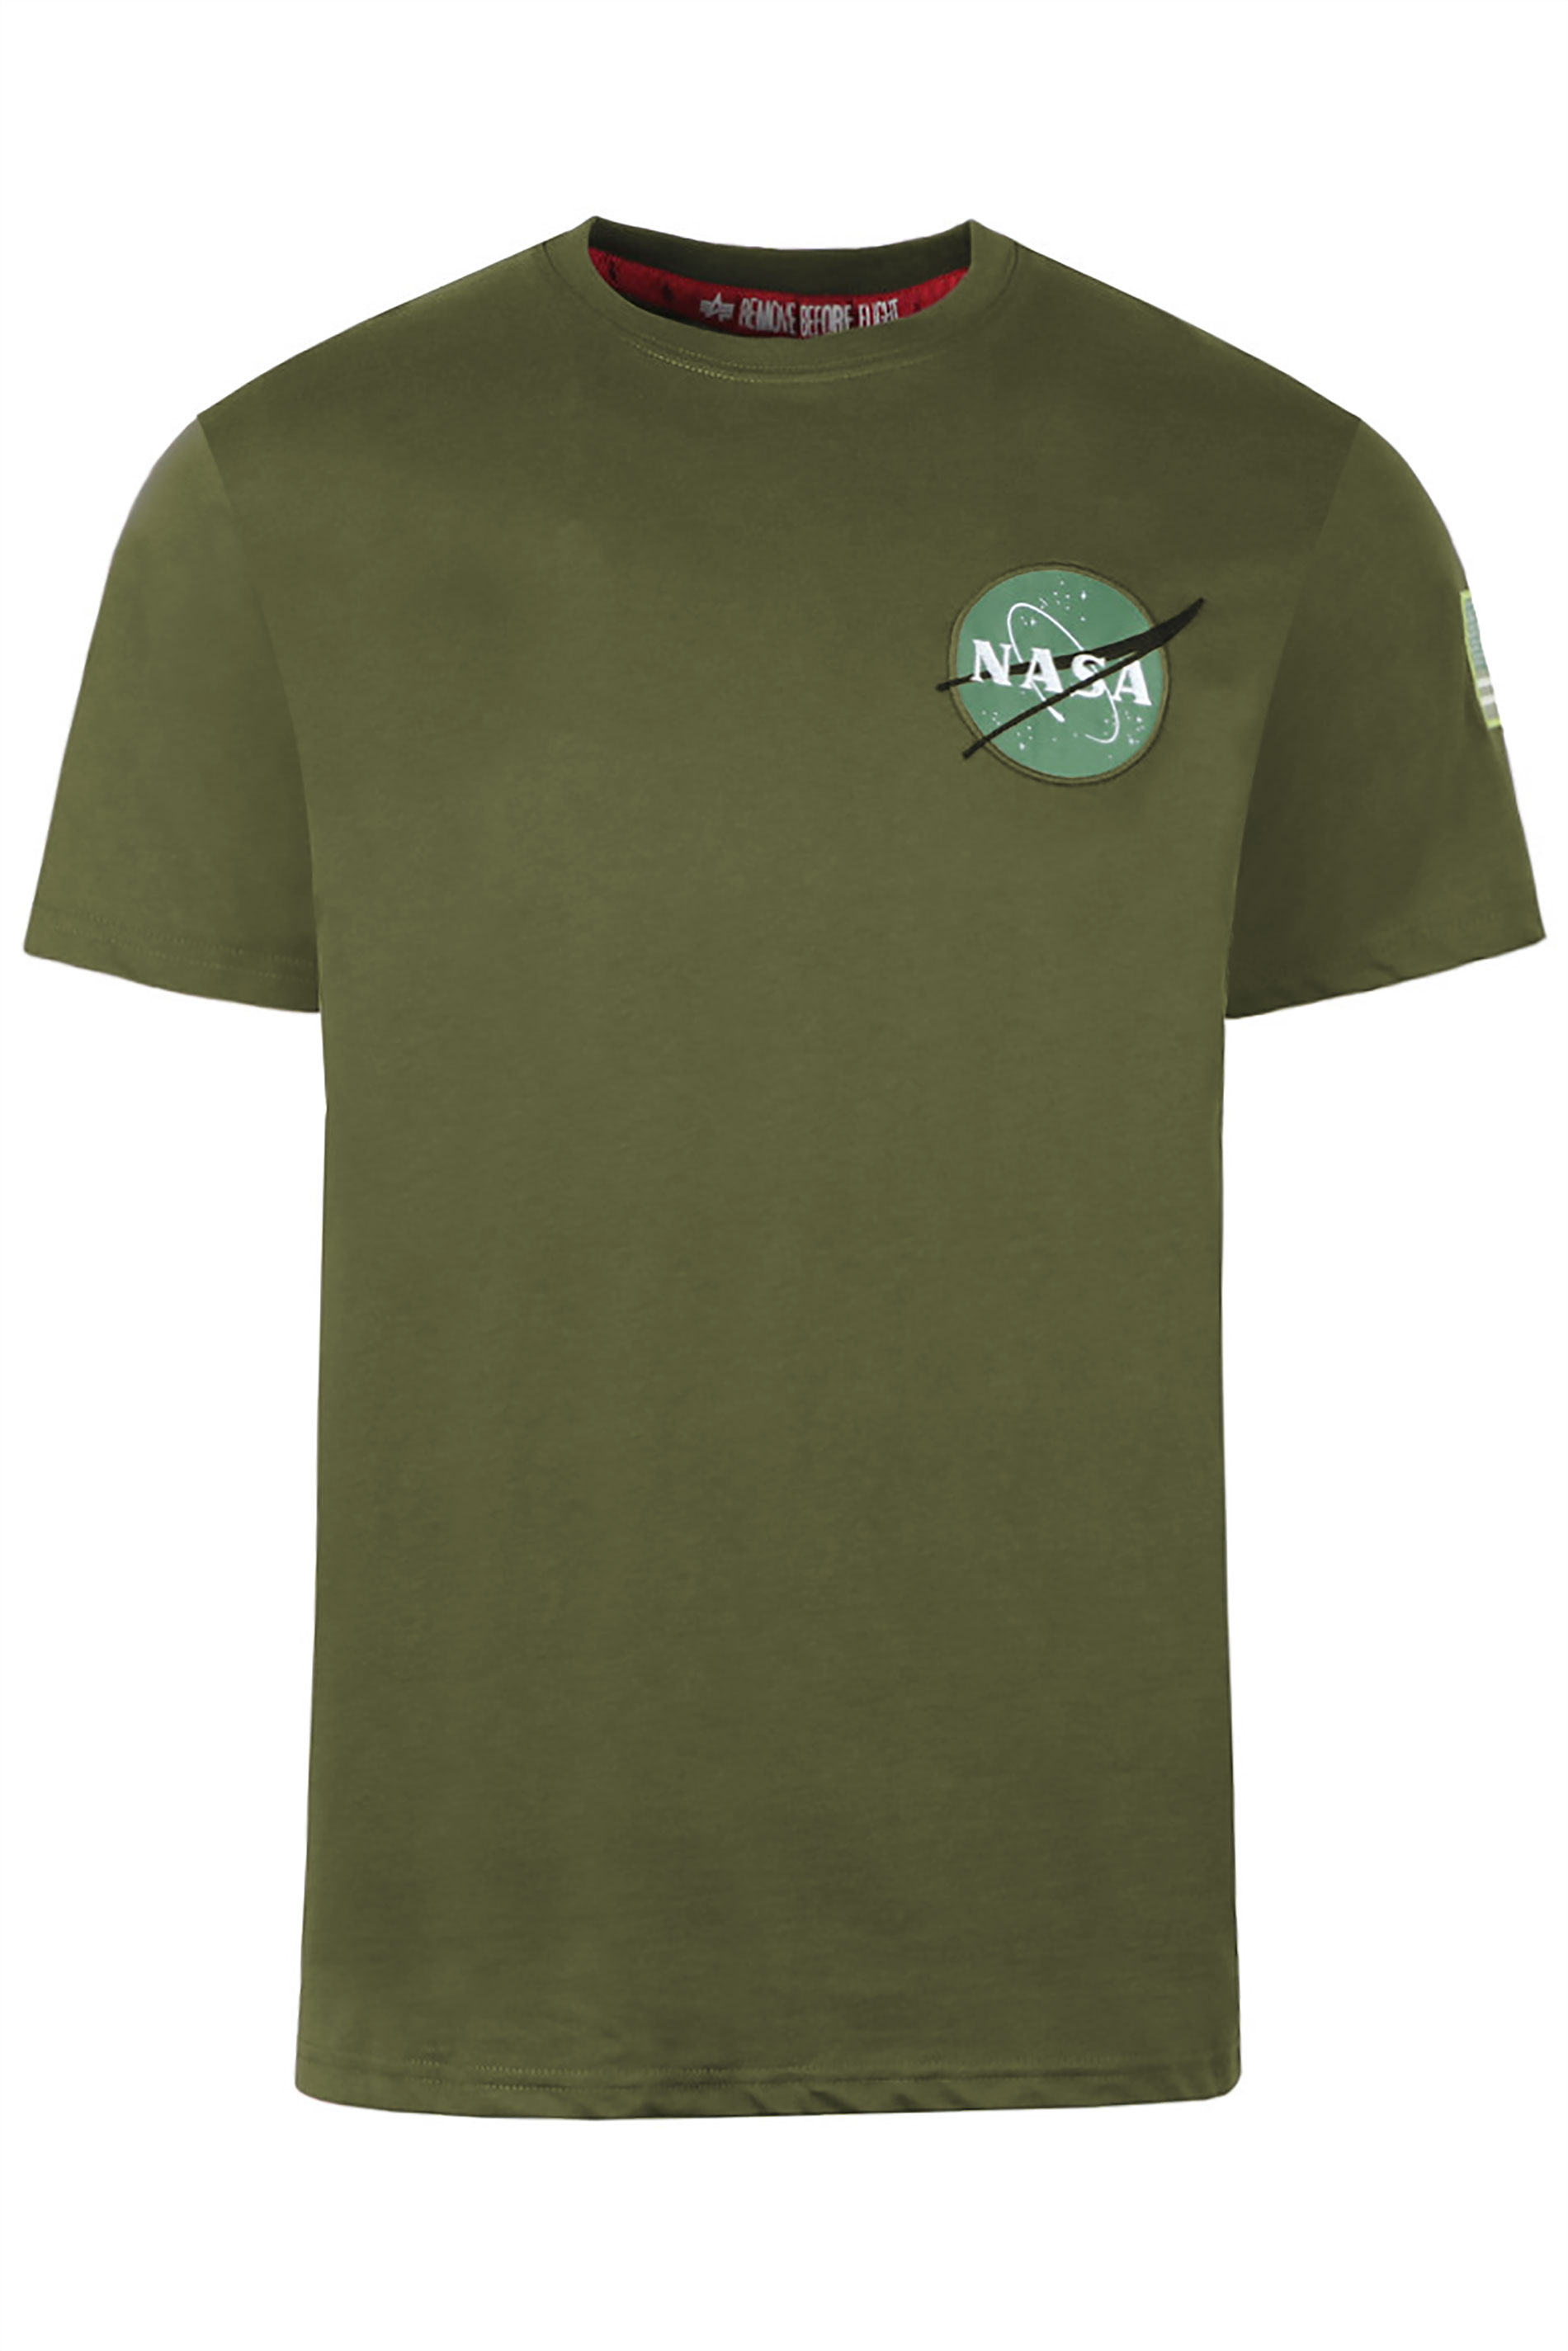 ALPHA INDUSTRIES Green Space Shuttle T-Shirt_F.jpg